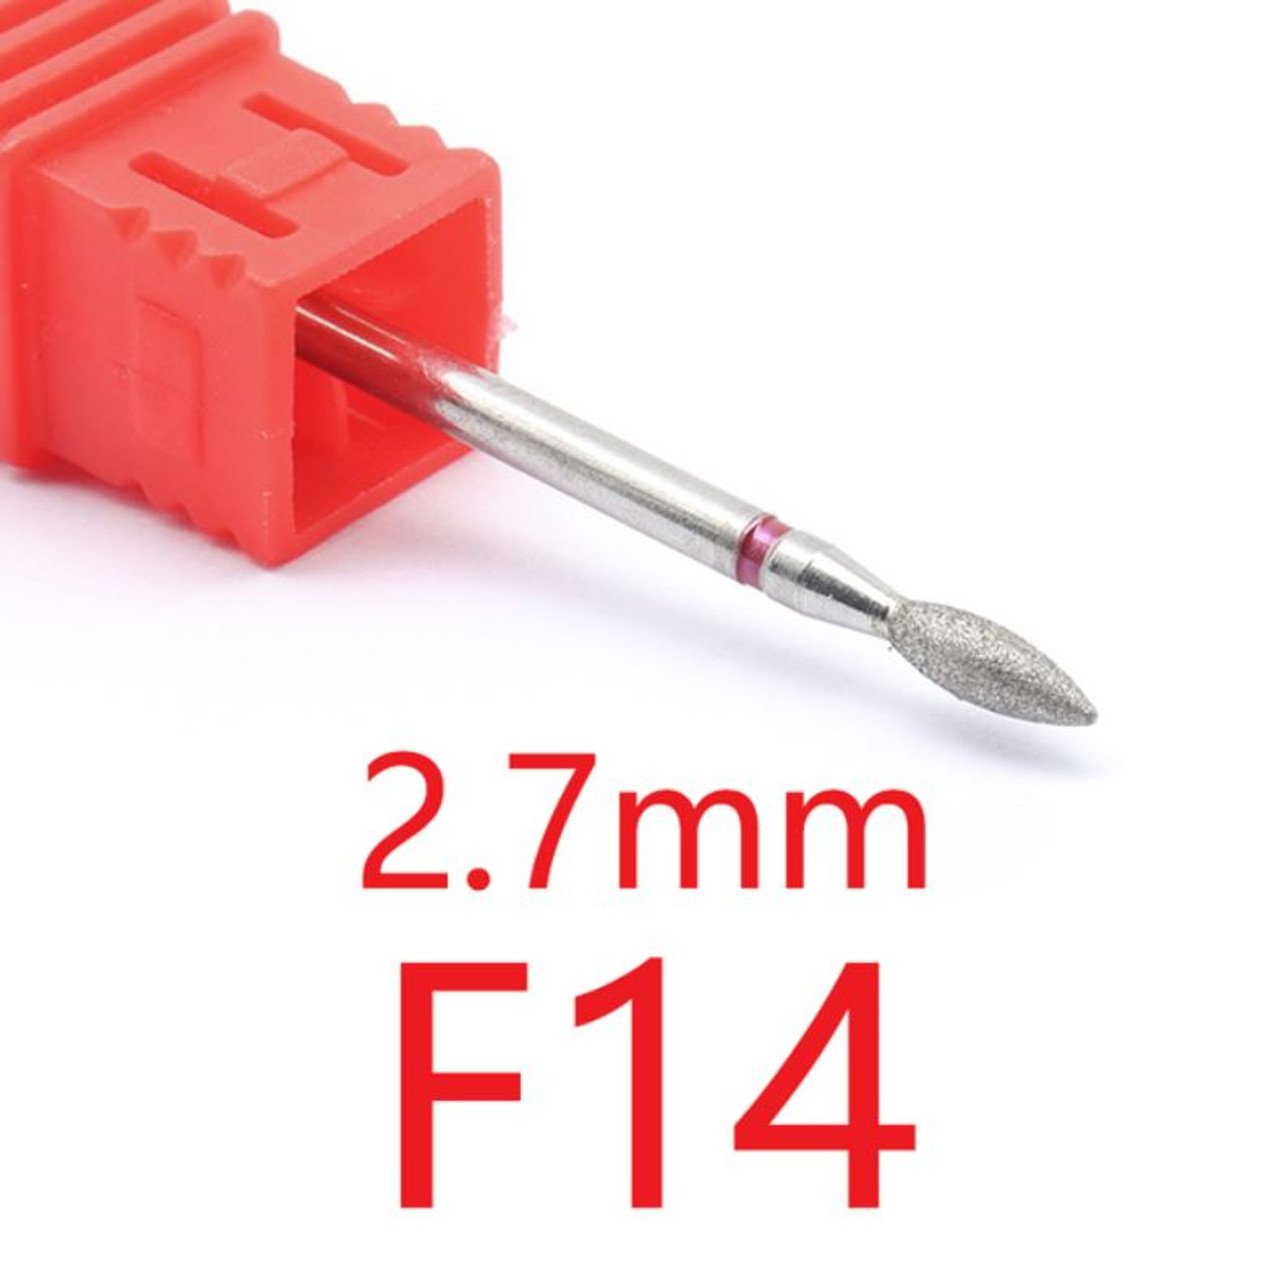 NDi beauty Diamond Drill Bit - 3/32 shank (FINE) - F14